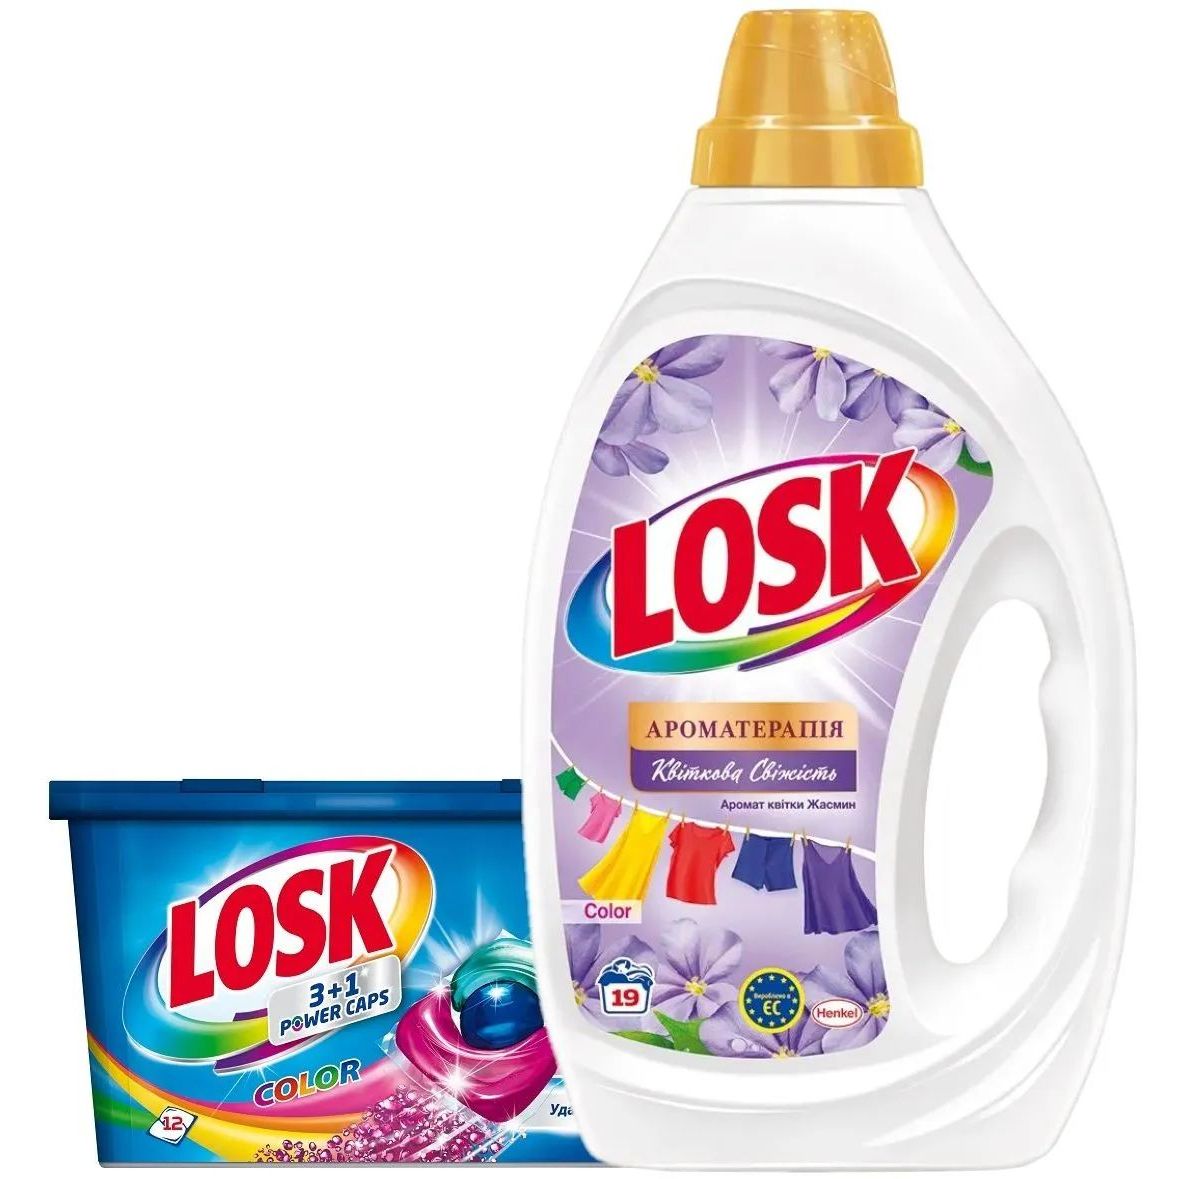 Набор Losk: Капсулы для стирки Losk Color 3в1, 12 шт. + Гель для стирки Losk Color Ароматерапия Эфирные масла и аромат цветка Жасмина, 855 мл - фото 1